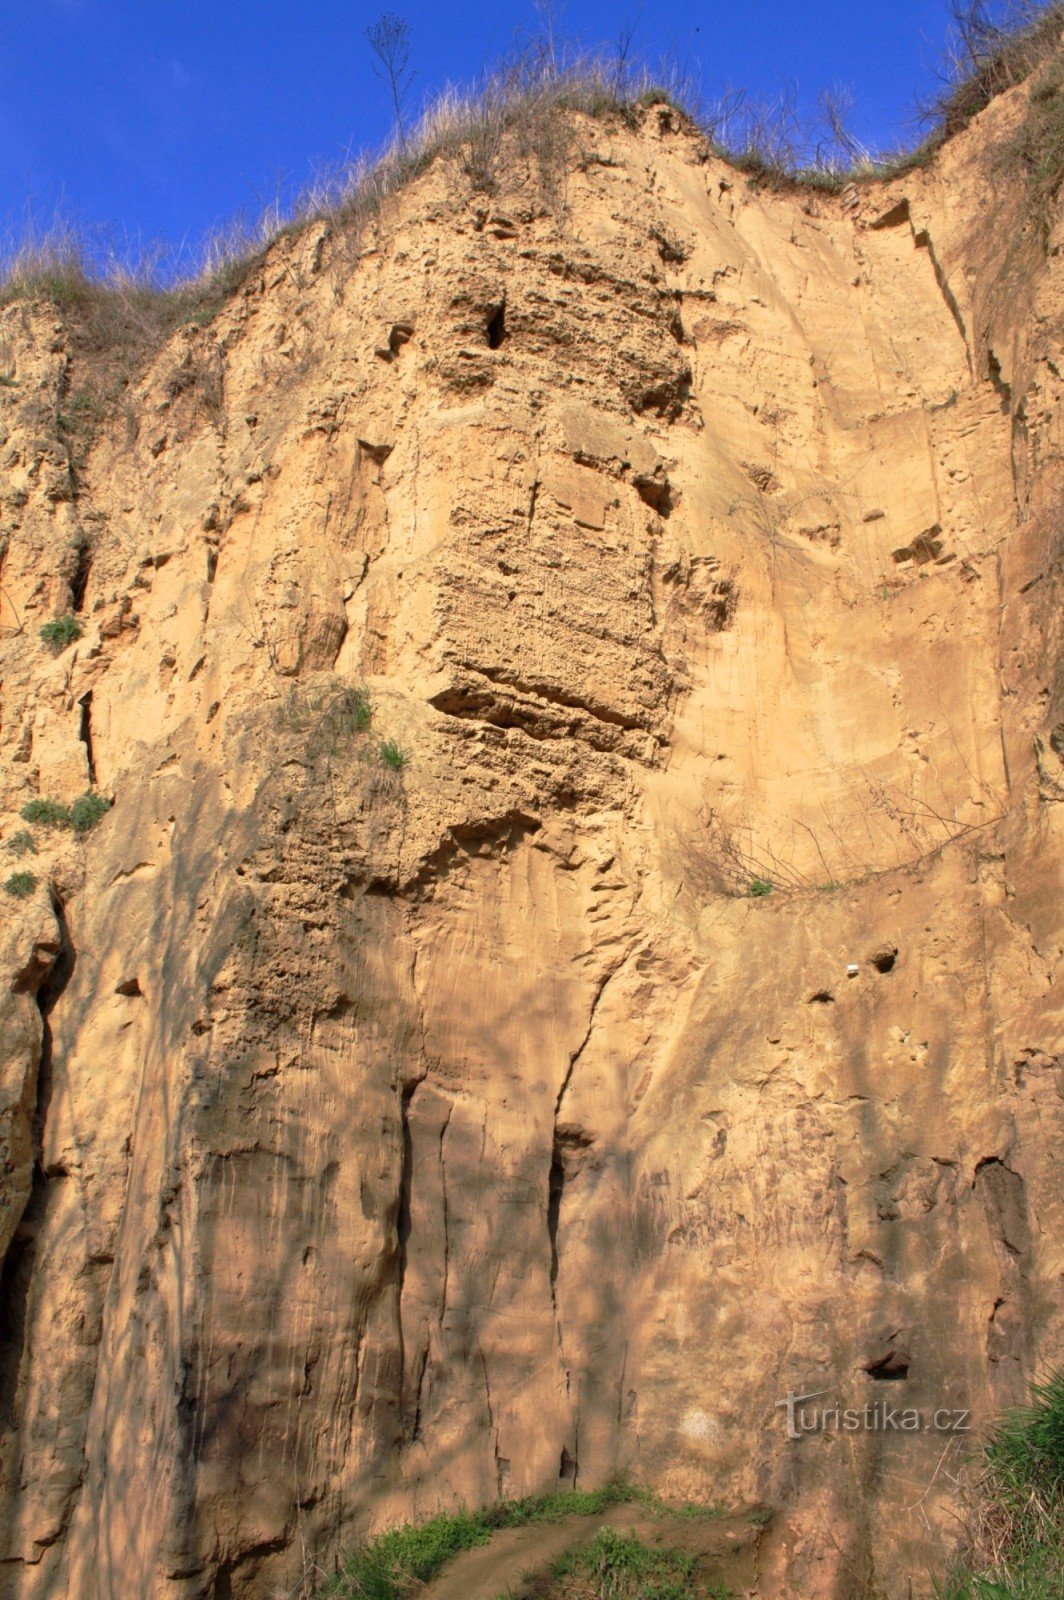 En detaljerad bild av sandgropsväggen